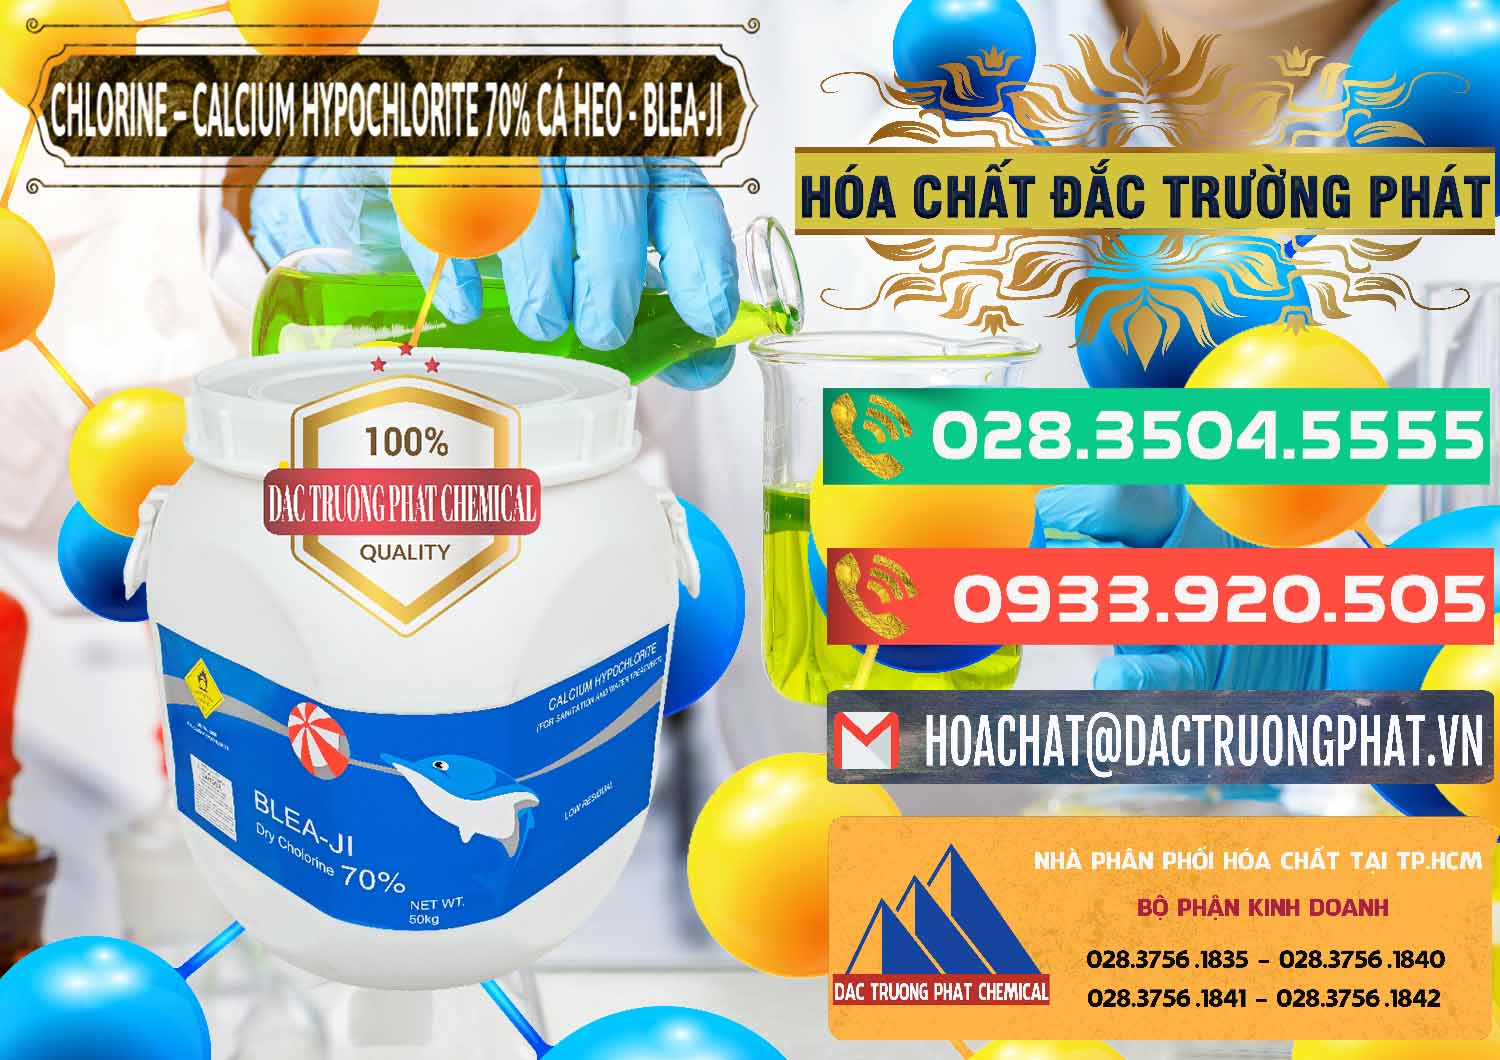 Cty chuyên kinh doanh và bán Clorin - Chlorine Cá Heo 70% Blea-Ji Trung Quốc China - 0056 - Chuyên cung ứng và phân phối hóa chất tại TP.HCM - congtyhoachat.com.vn